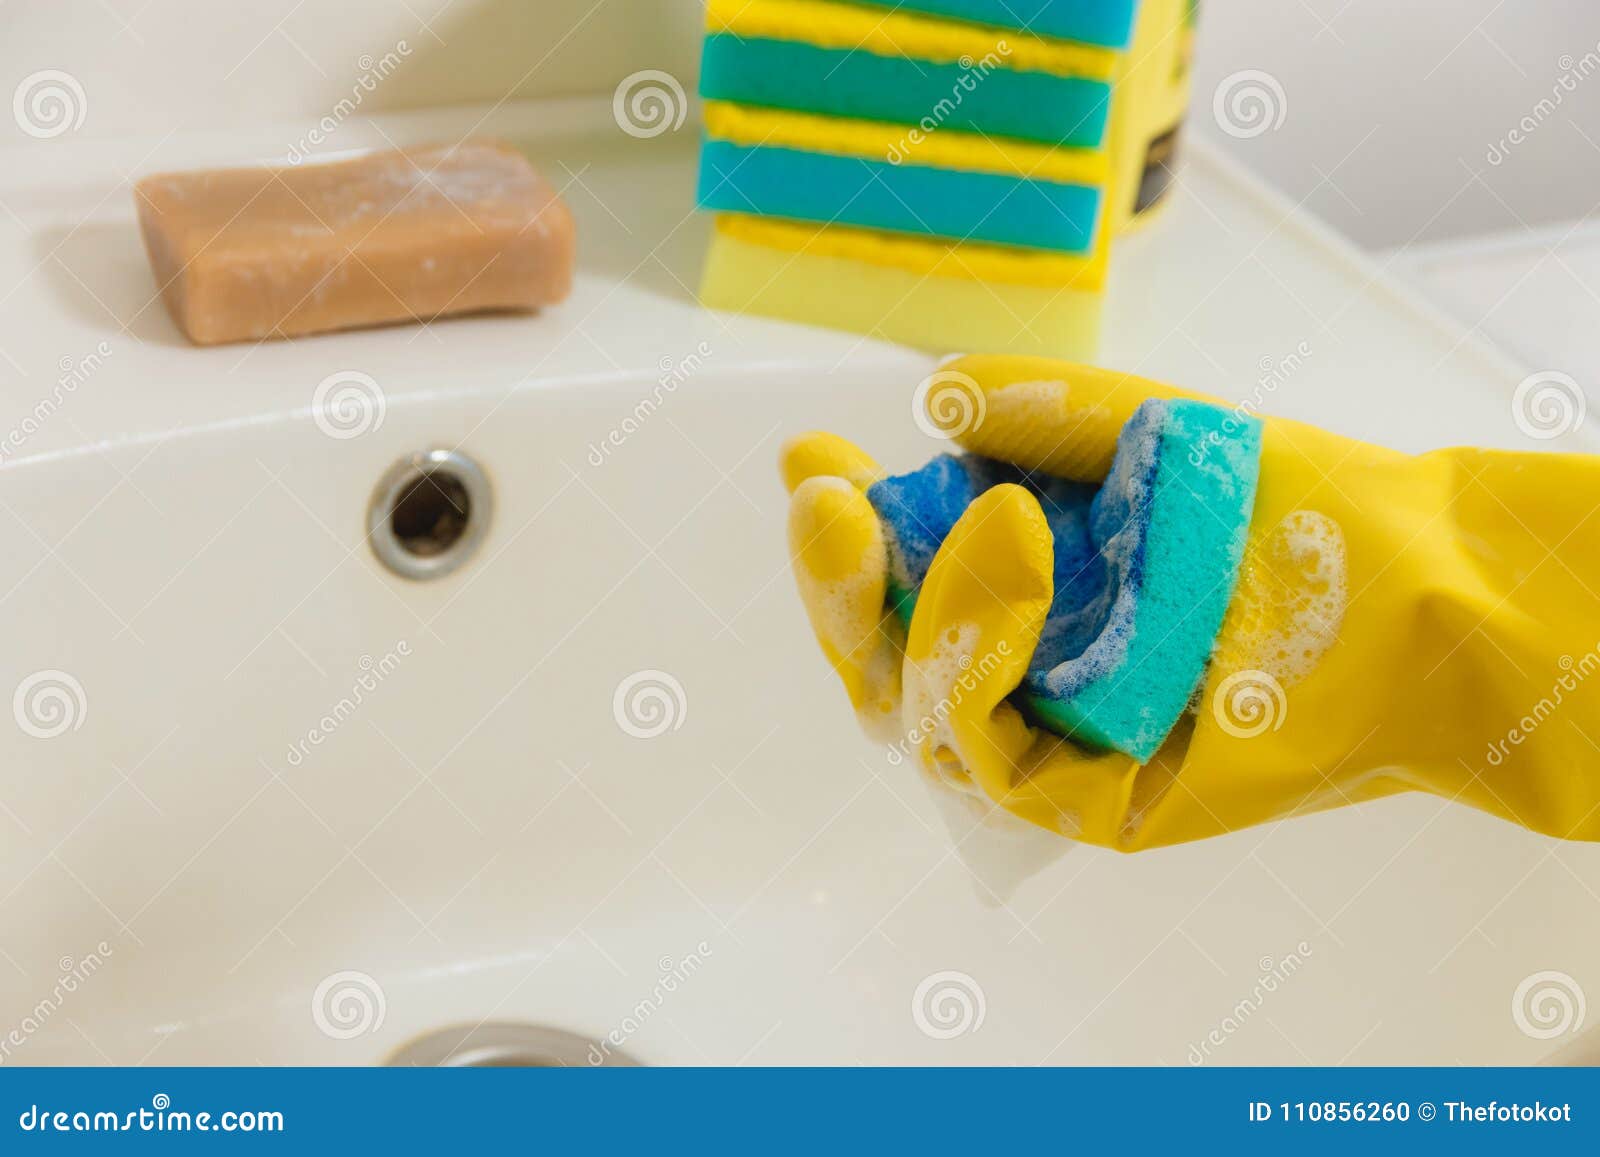 Чистетел вану резинавий. Пятновыводитель китайский голубой с губкой. Пожелтела резиновая часть лейки в ванной. Покрытие стали порошком в ванной. Чем отмыть желтое в ванной